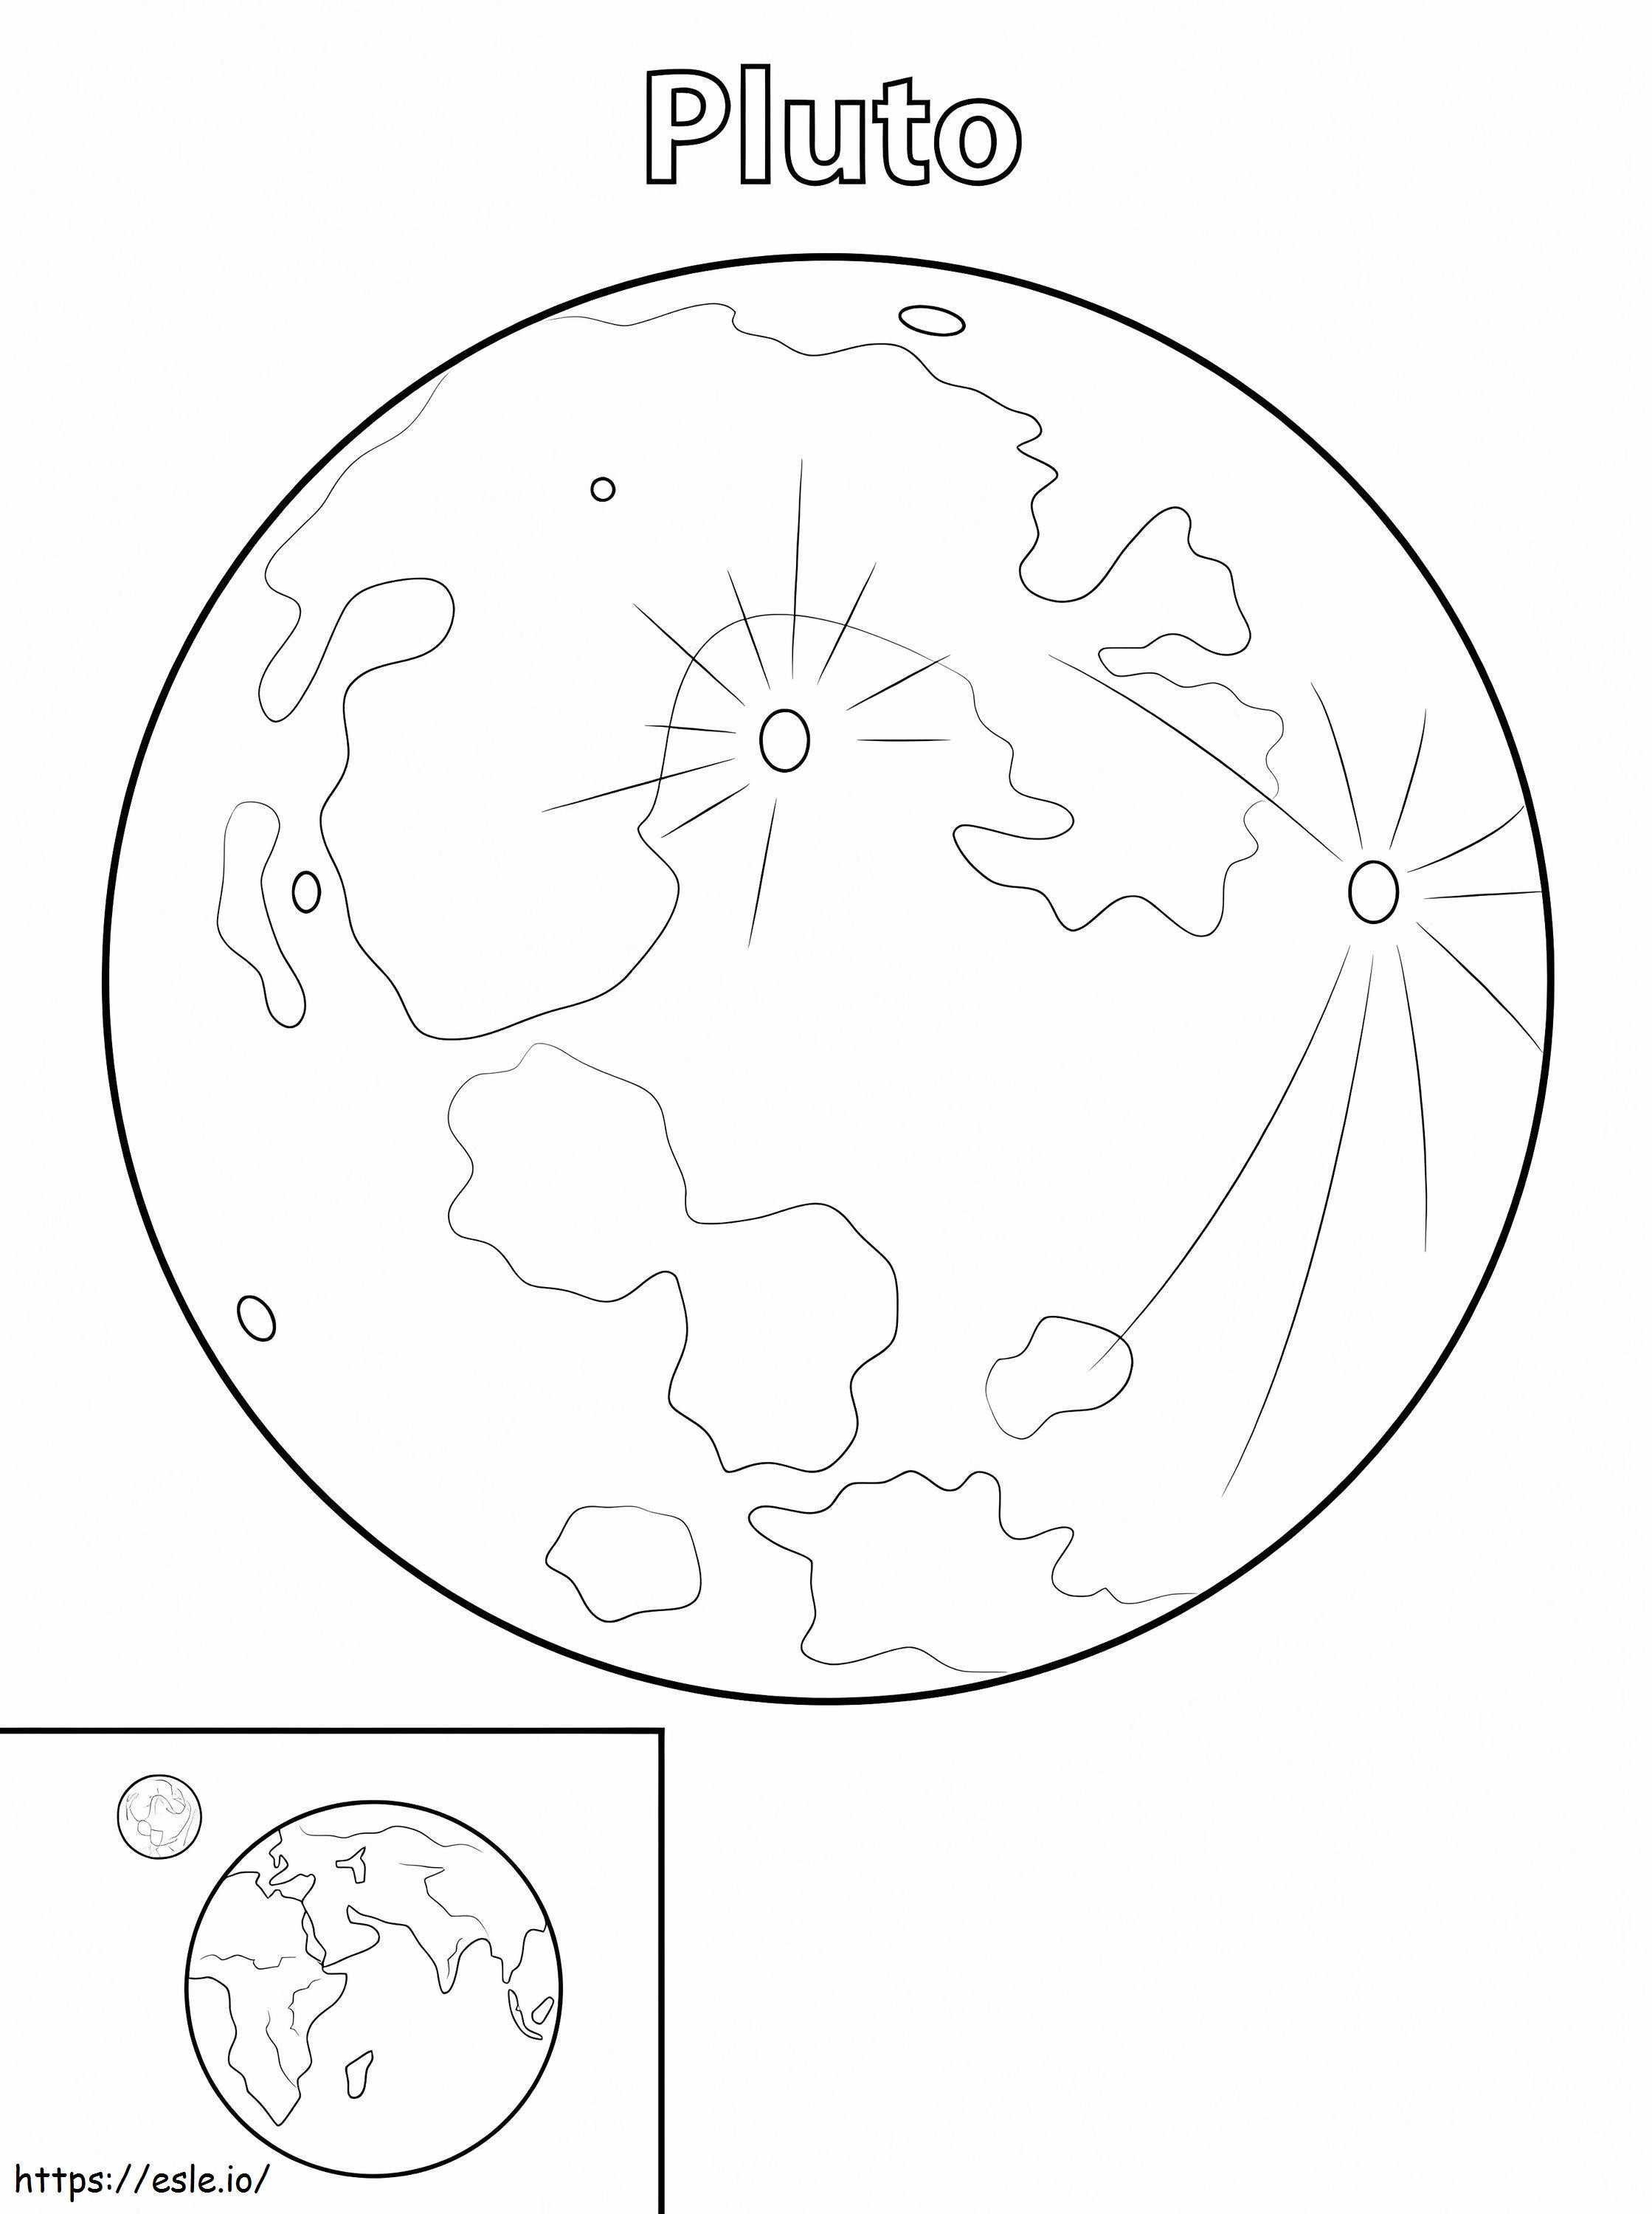 Coloriage Planète Pluton à imprimer dessin